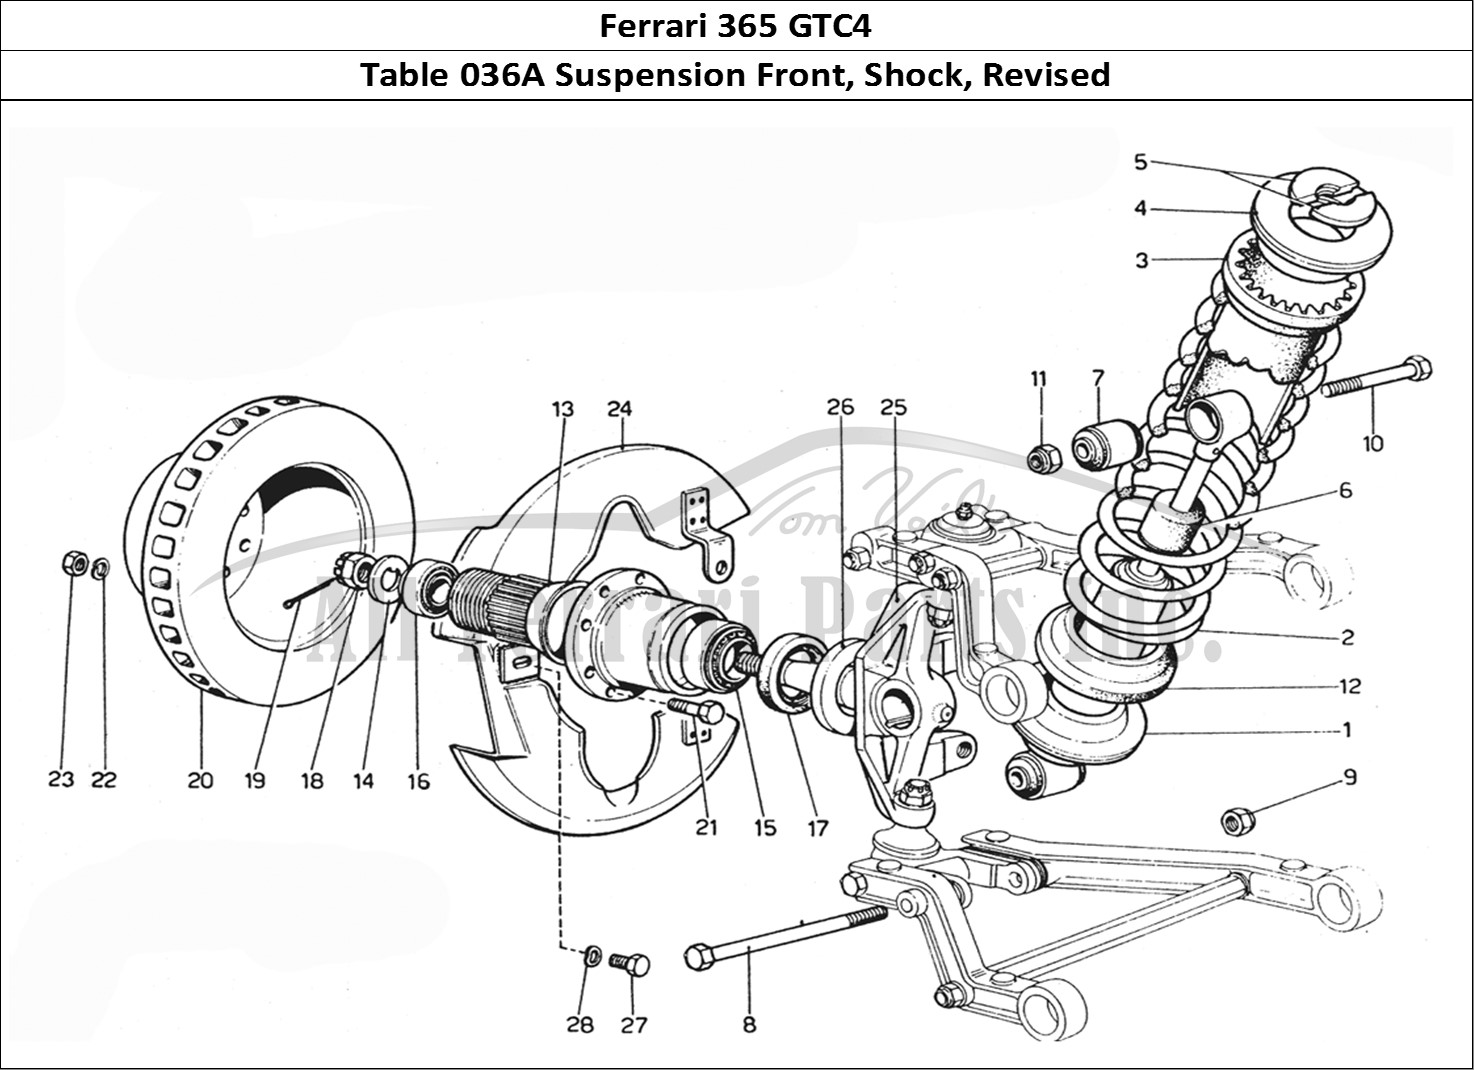 Ferrari Parts Ferrari 365 GTC4 (Mechanical) Page 036 Front suspension & Shock